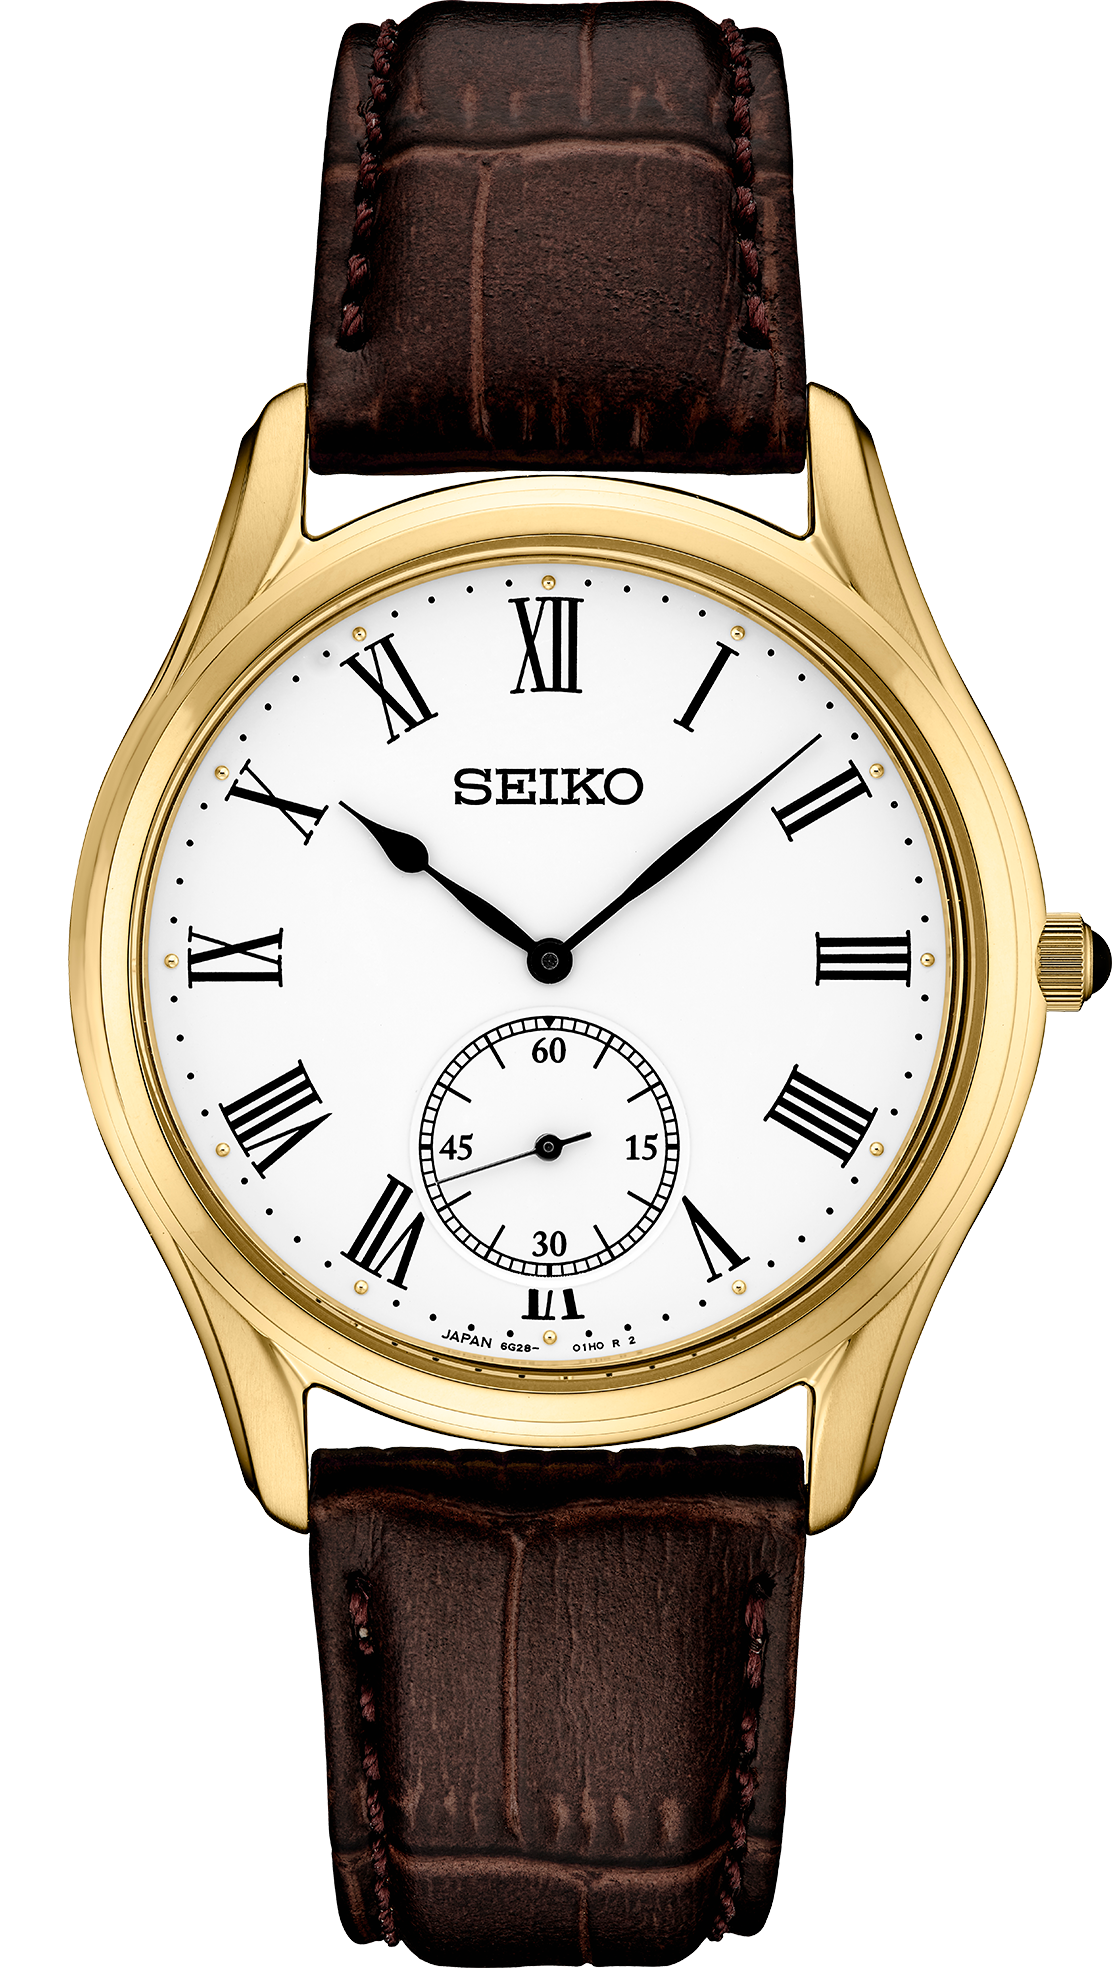 Seiko Essentials Collection SRK050